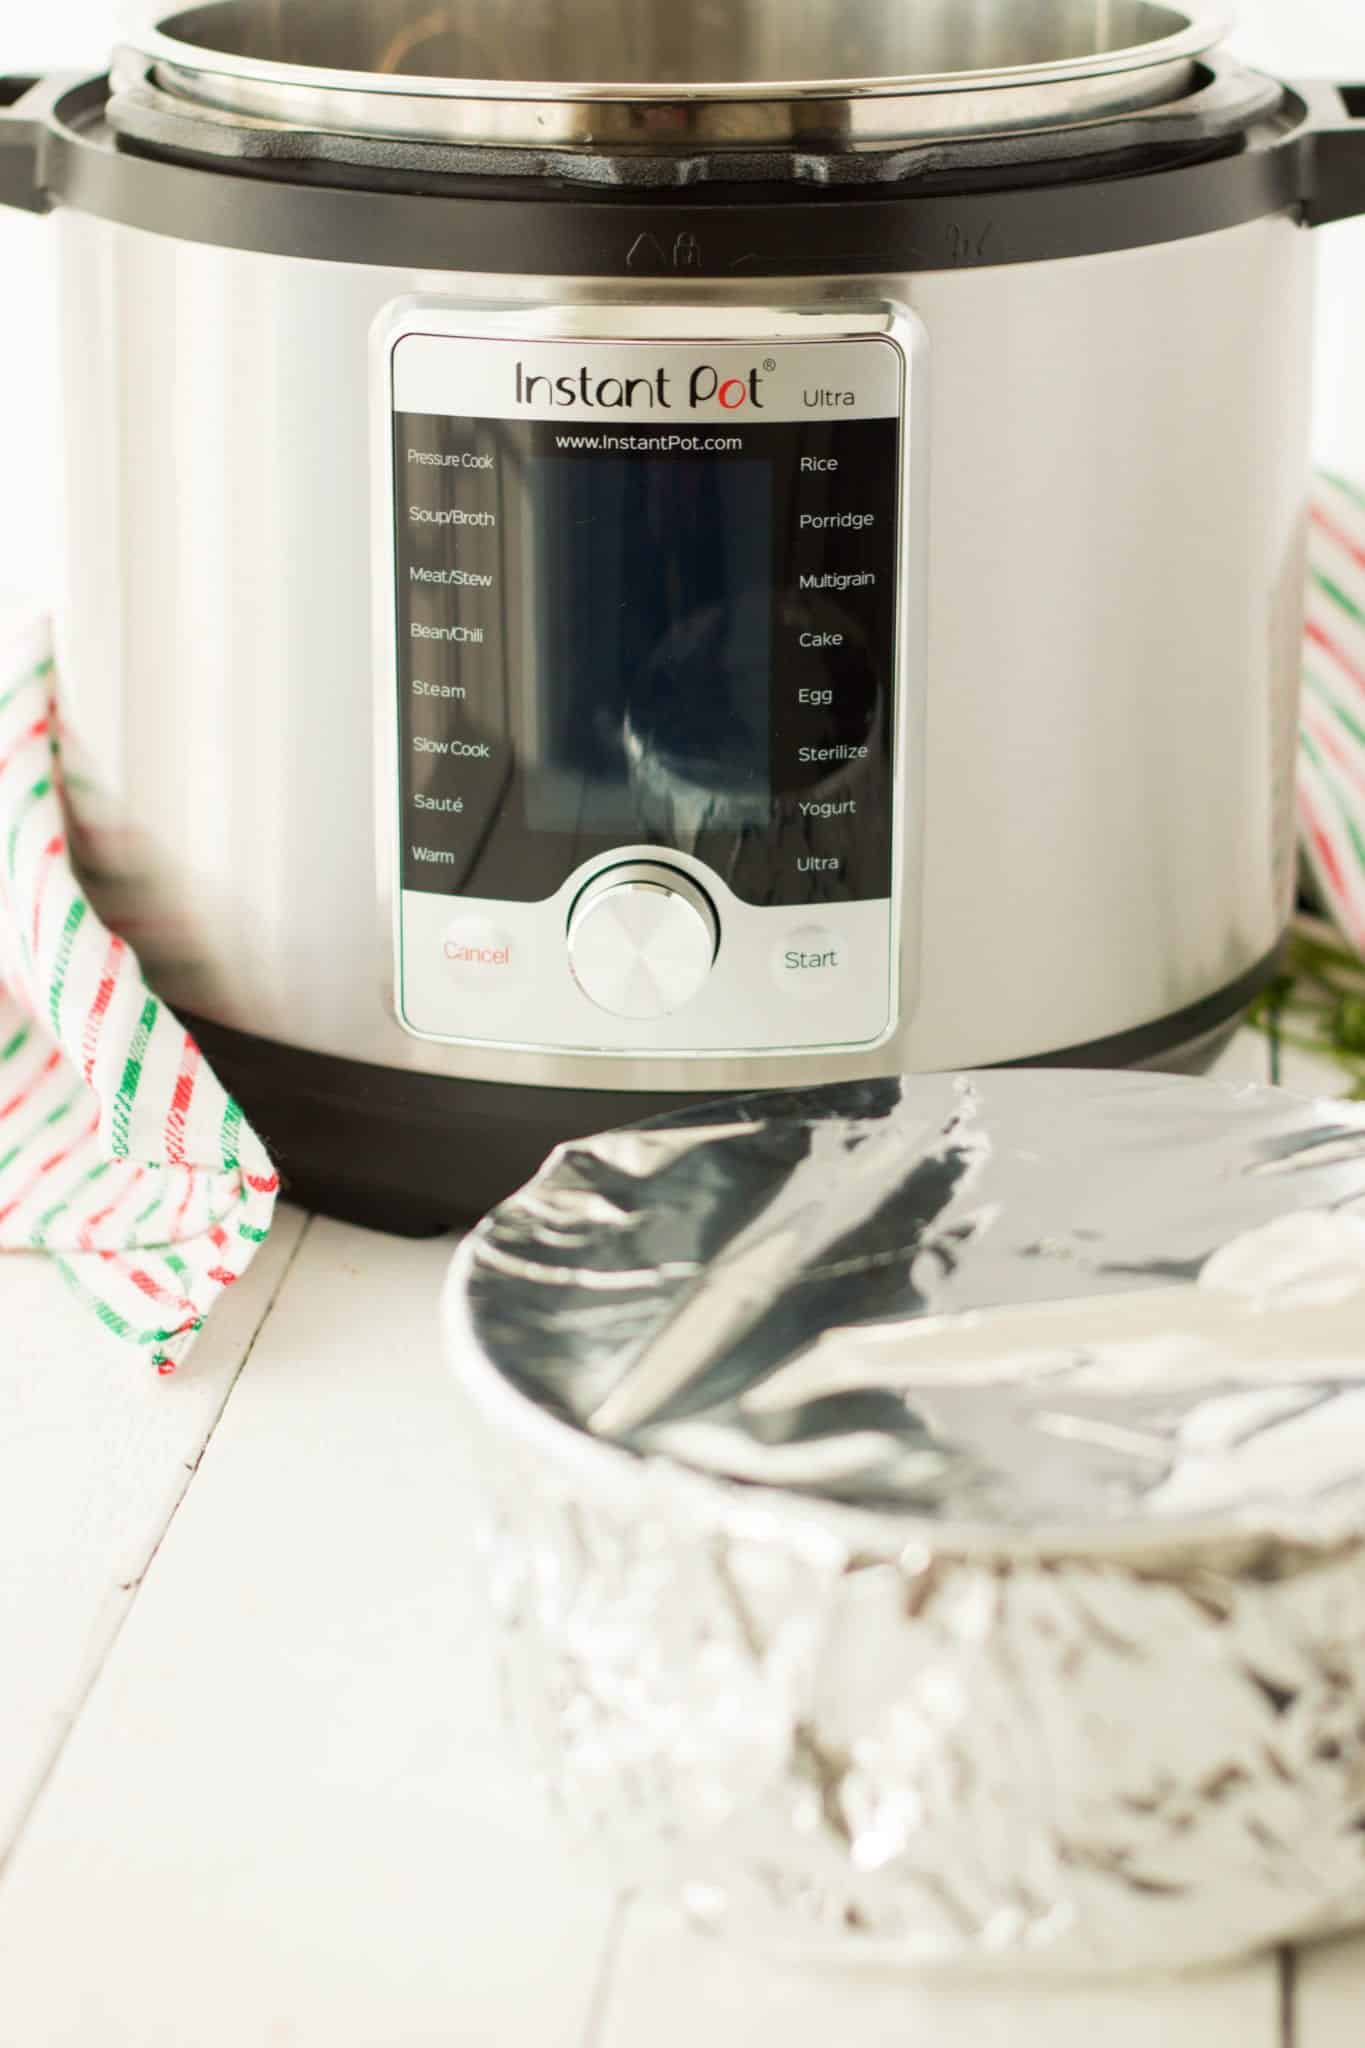 55 Instant Pot Trivet ideas  instant pot, instant pot recipes